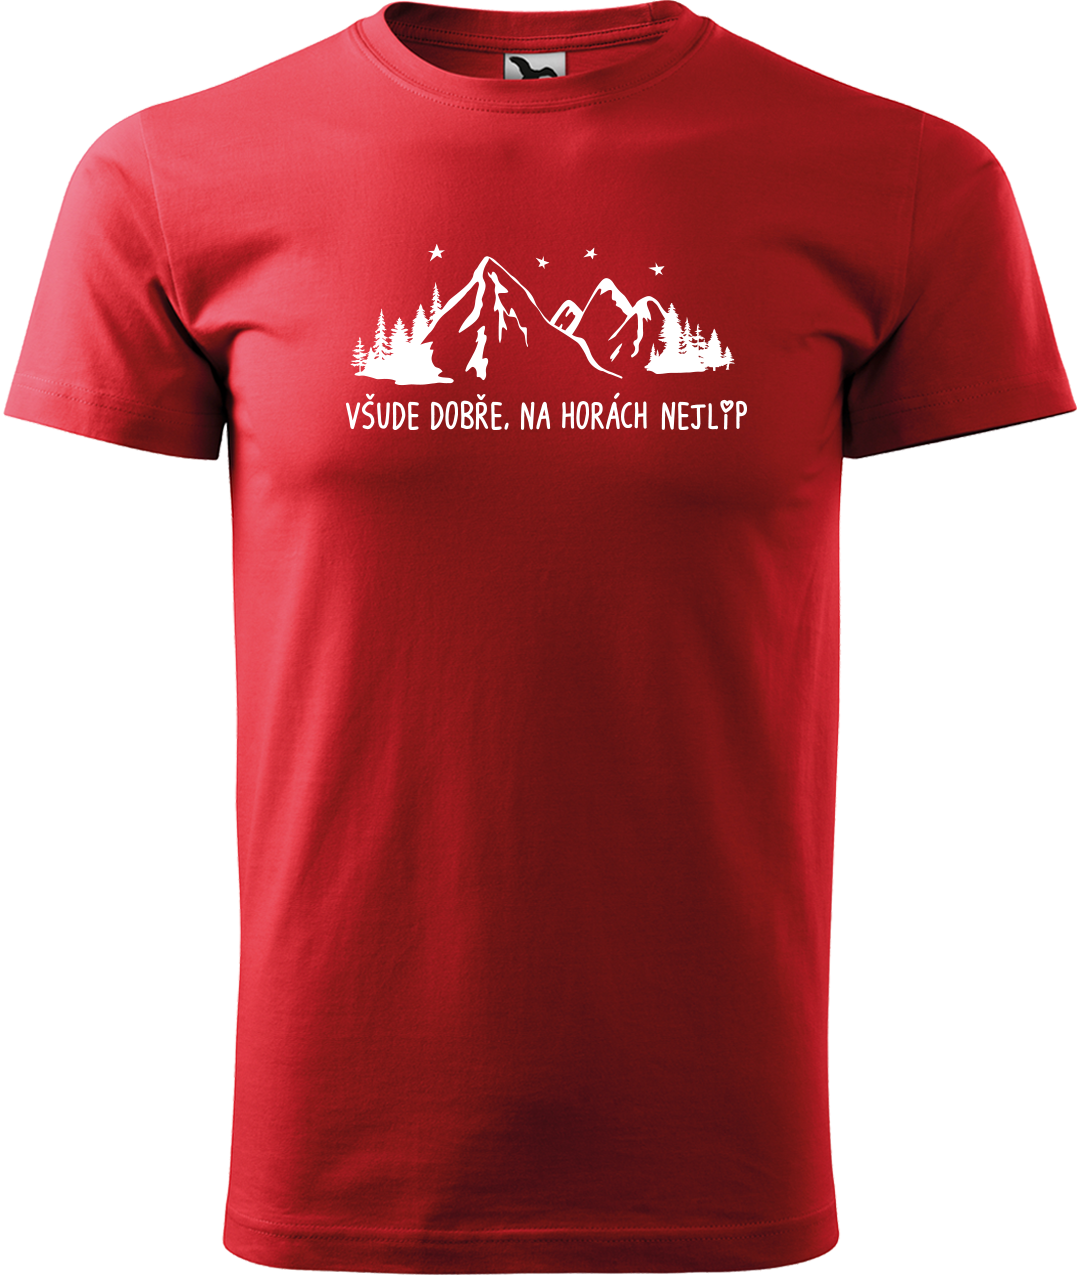 Pánské tričko na hory - Všude dobře, na horách nejlíp Velikost: L, Barva: Červená (07)